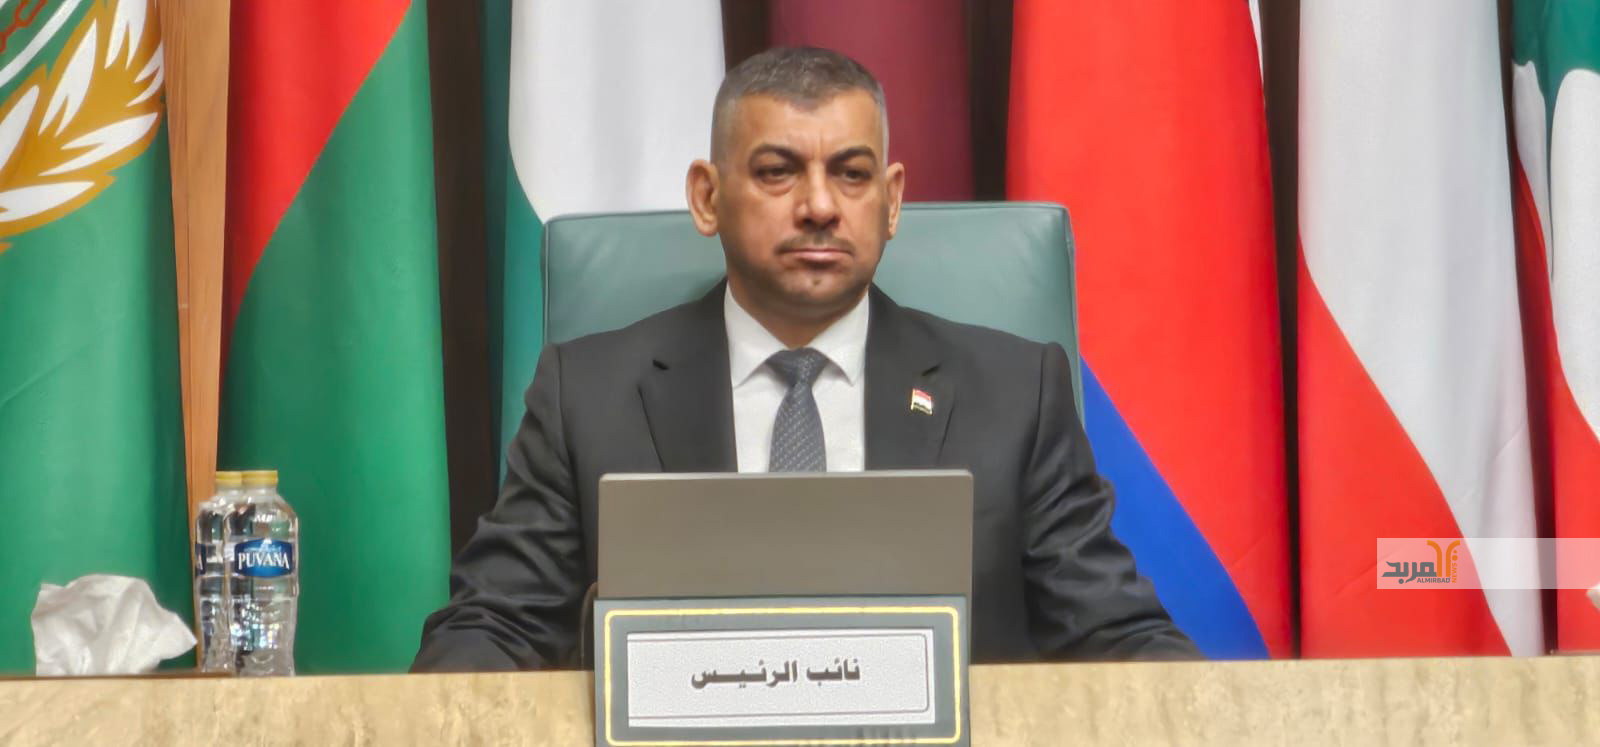 مقترح عراقي لإنشاء مجلس مختص في مكافحة الفساد بالدول العربية